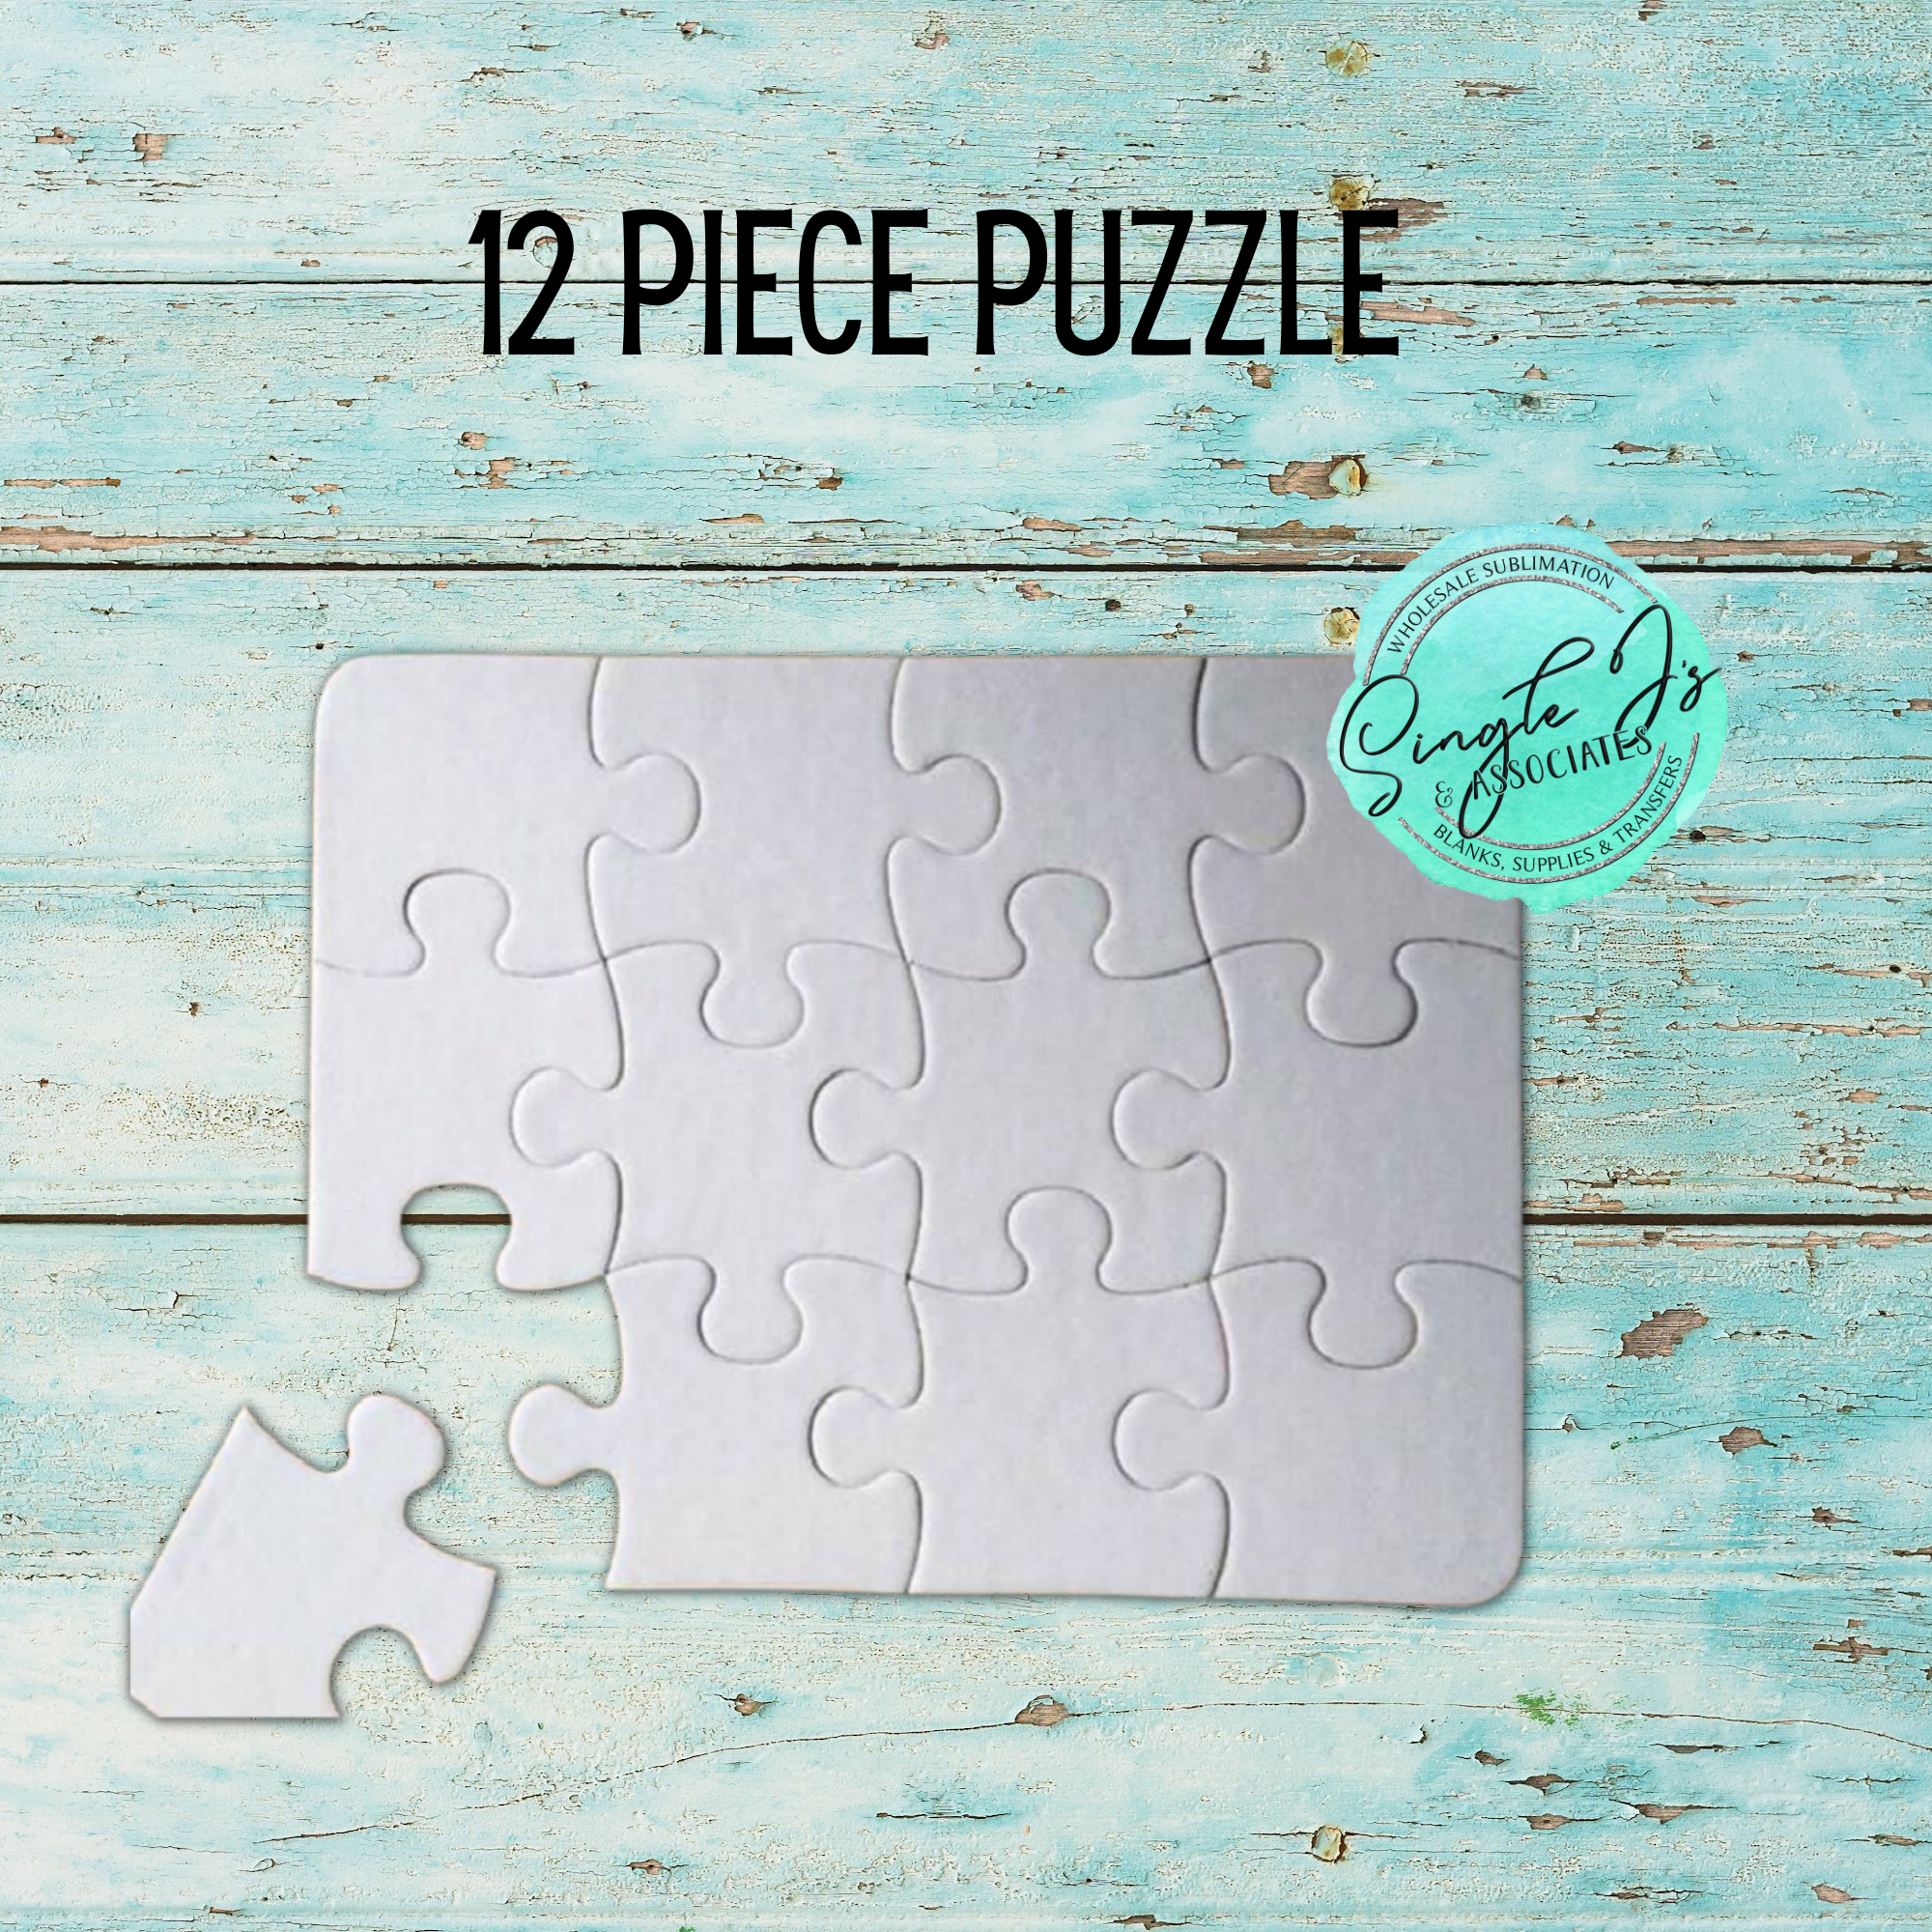 12 Piece Puzzle – Single J's Sublimation